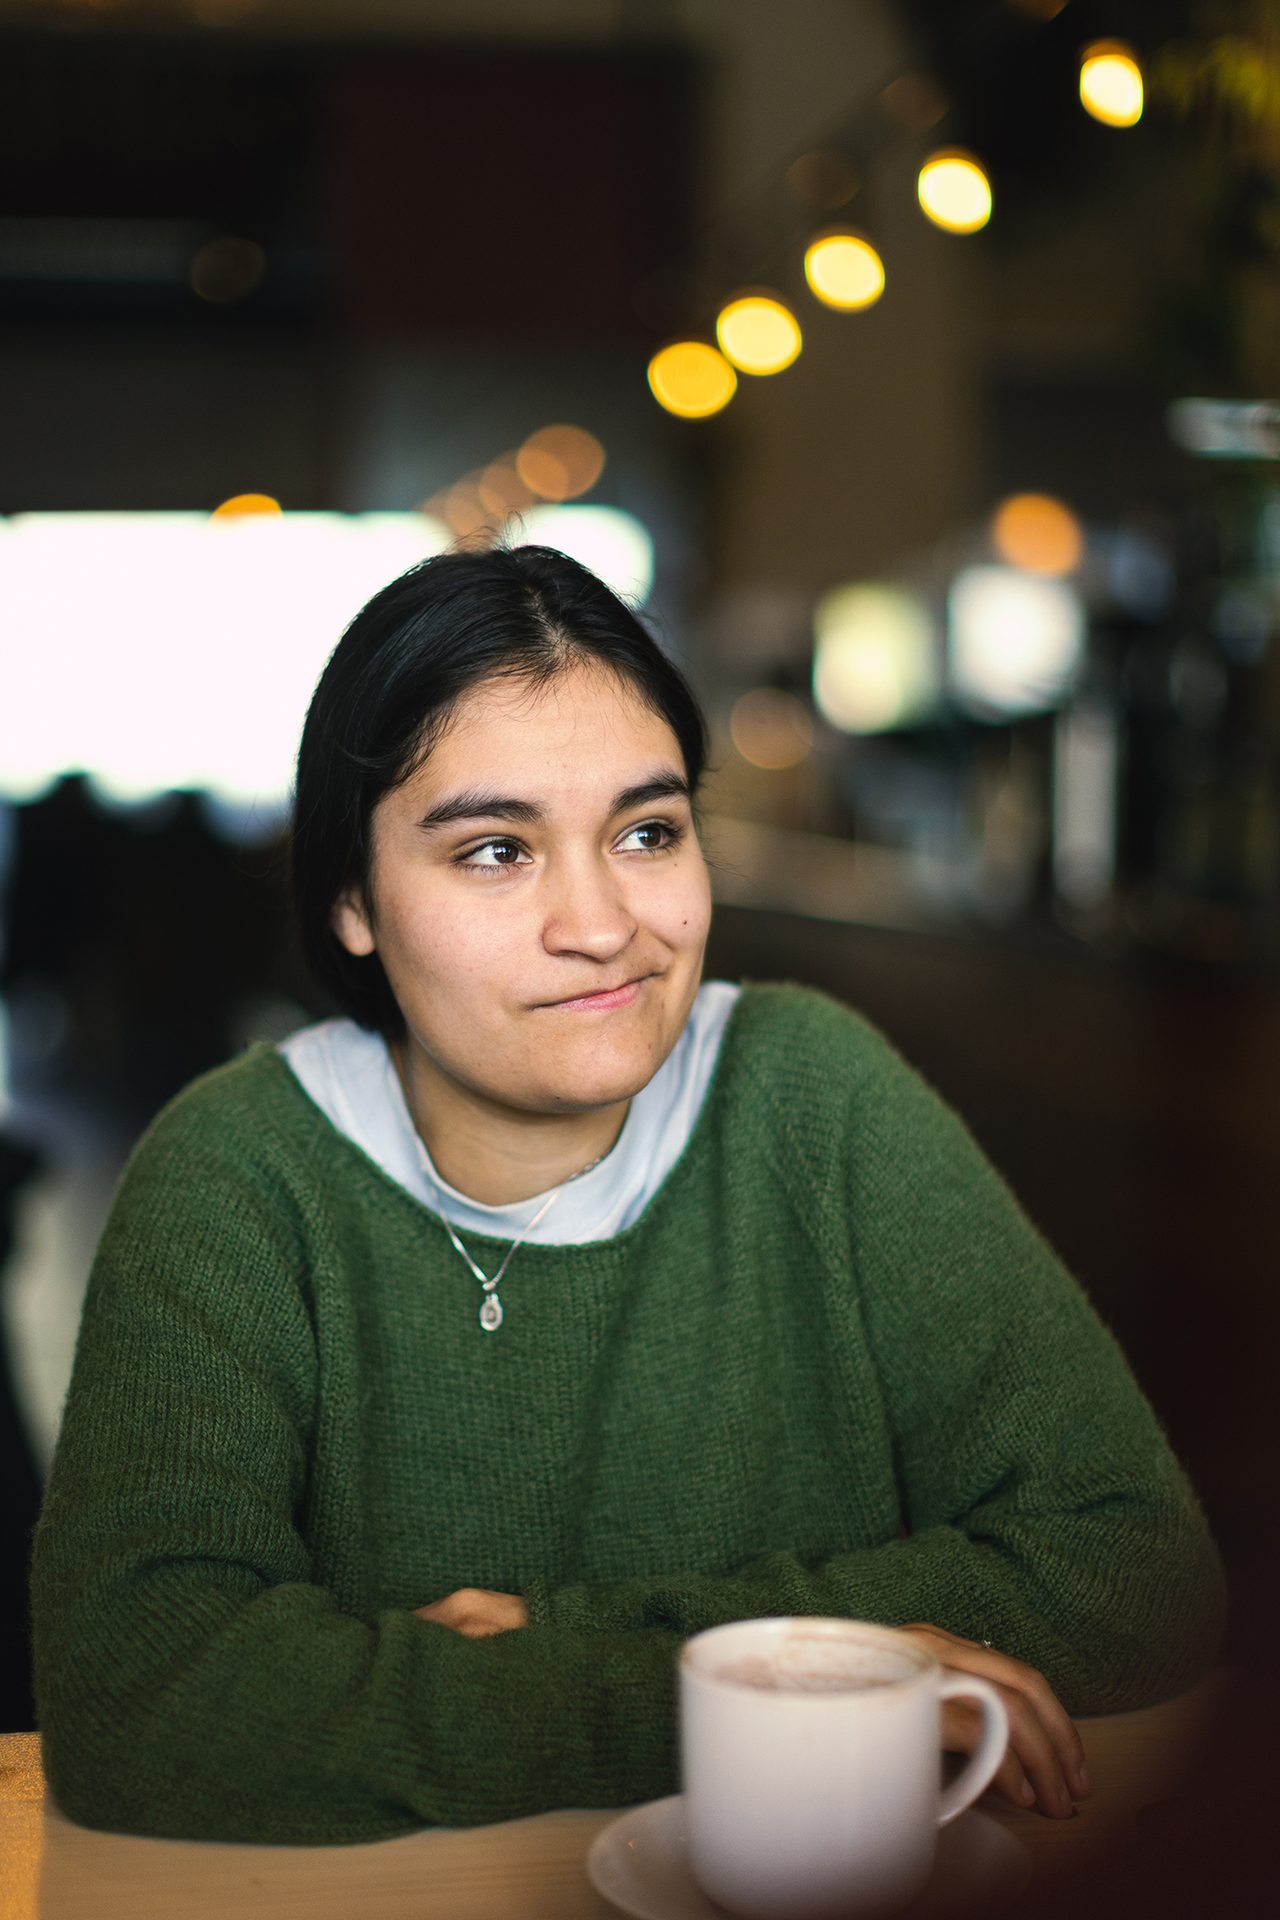 Portrett av en ung kvinne med m&#xF8;rkt h&#xE5;r som sitter med en kaffekopp ved siden av. Hun ser tankefull ut.